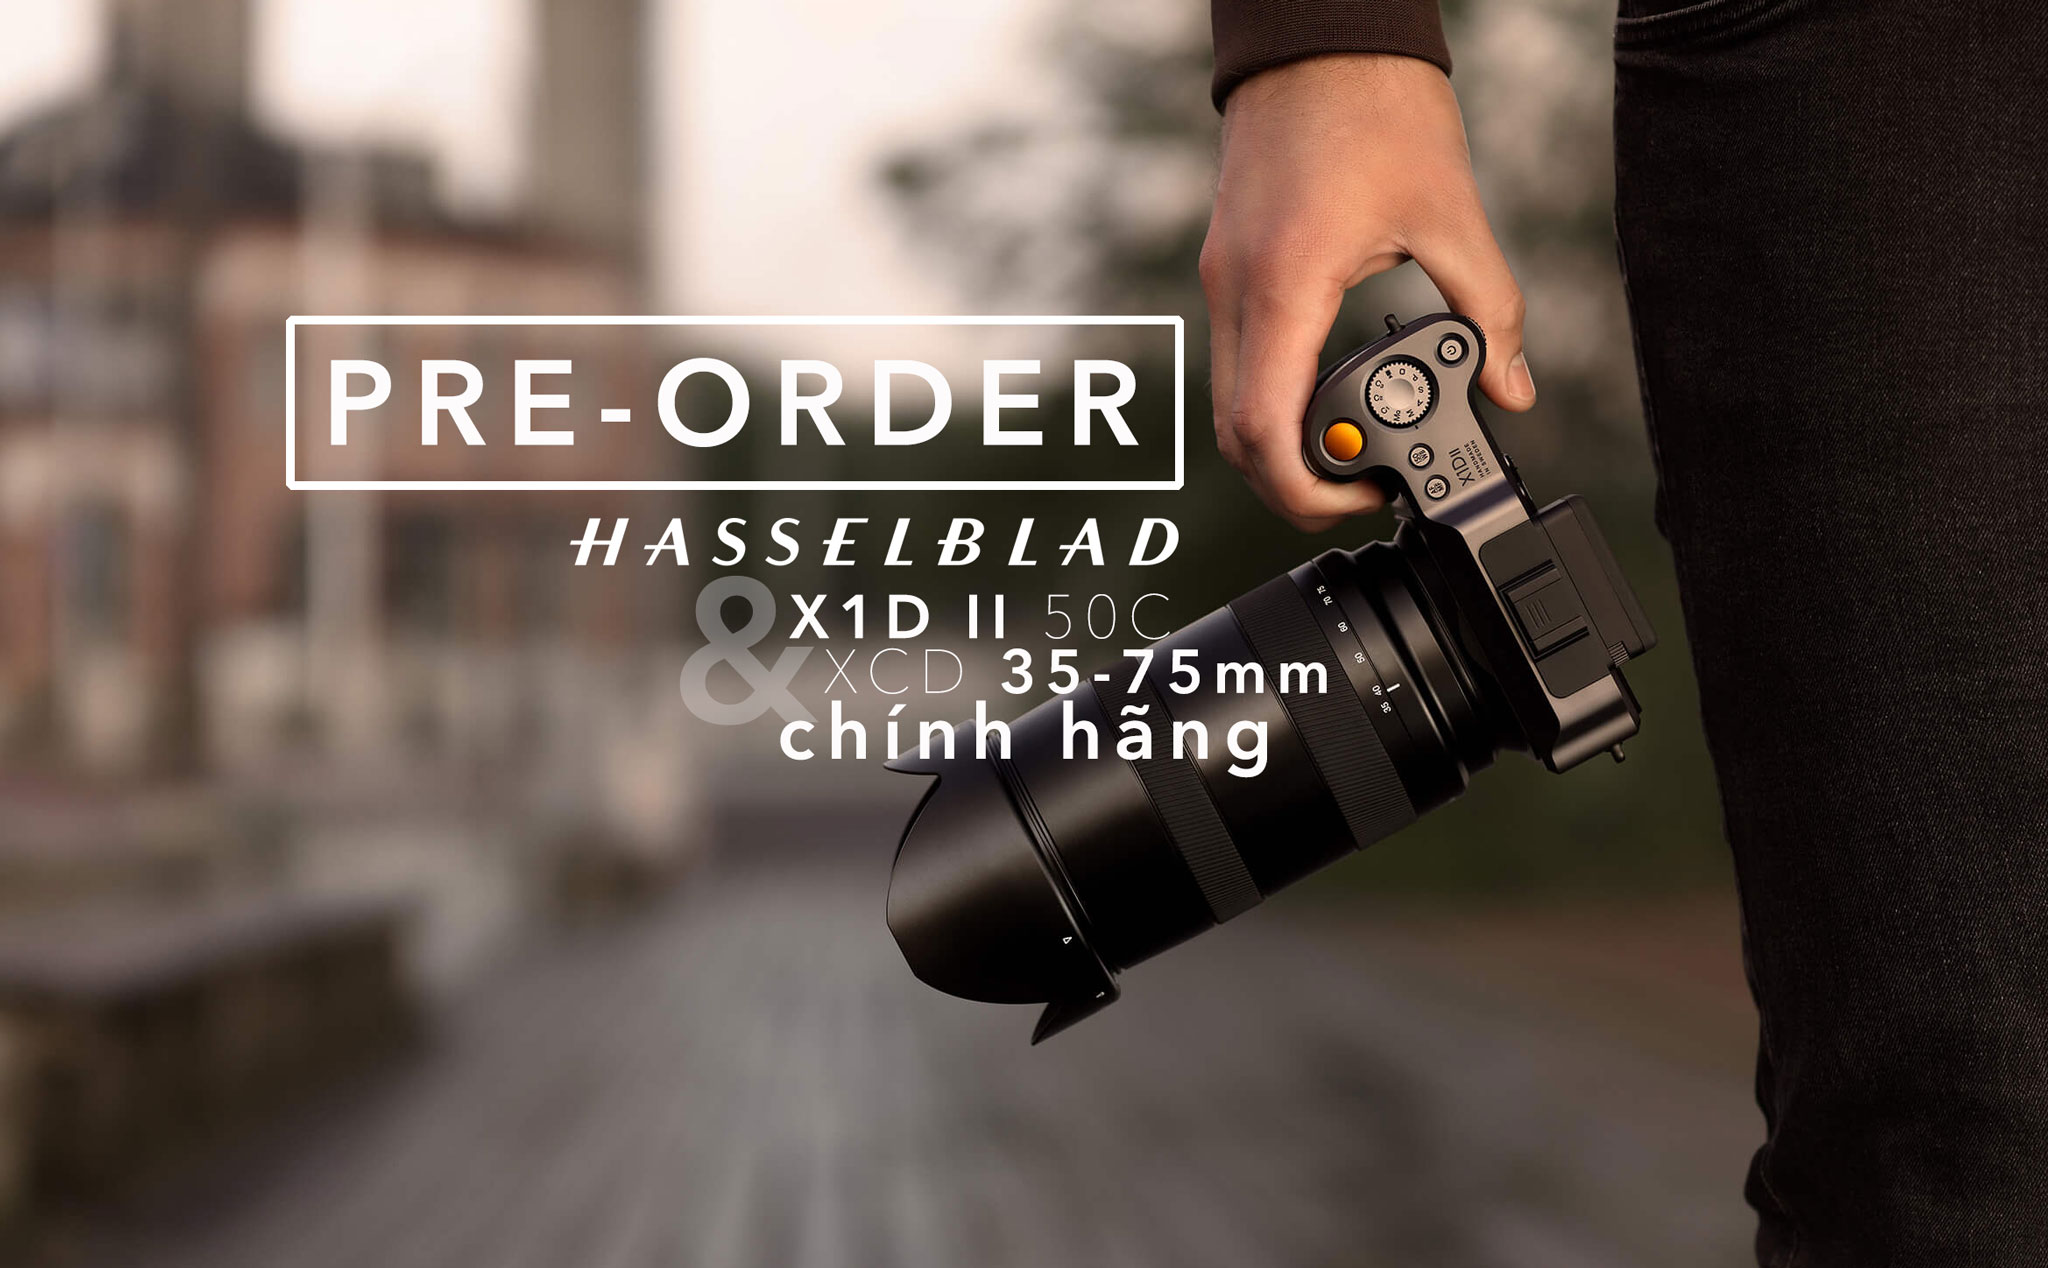 Hasselblad X1D II 50C & ống kính XCD 35-75mm được cho đặt trước chính hãng với giá 146 & 132 triệu